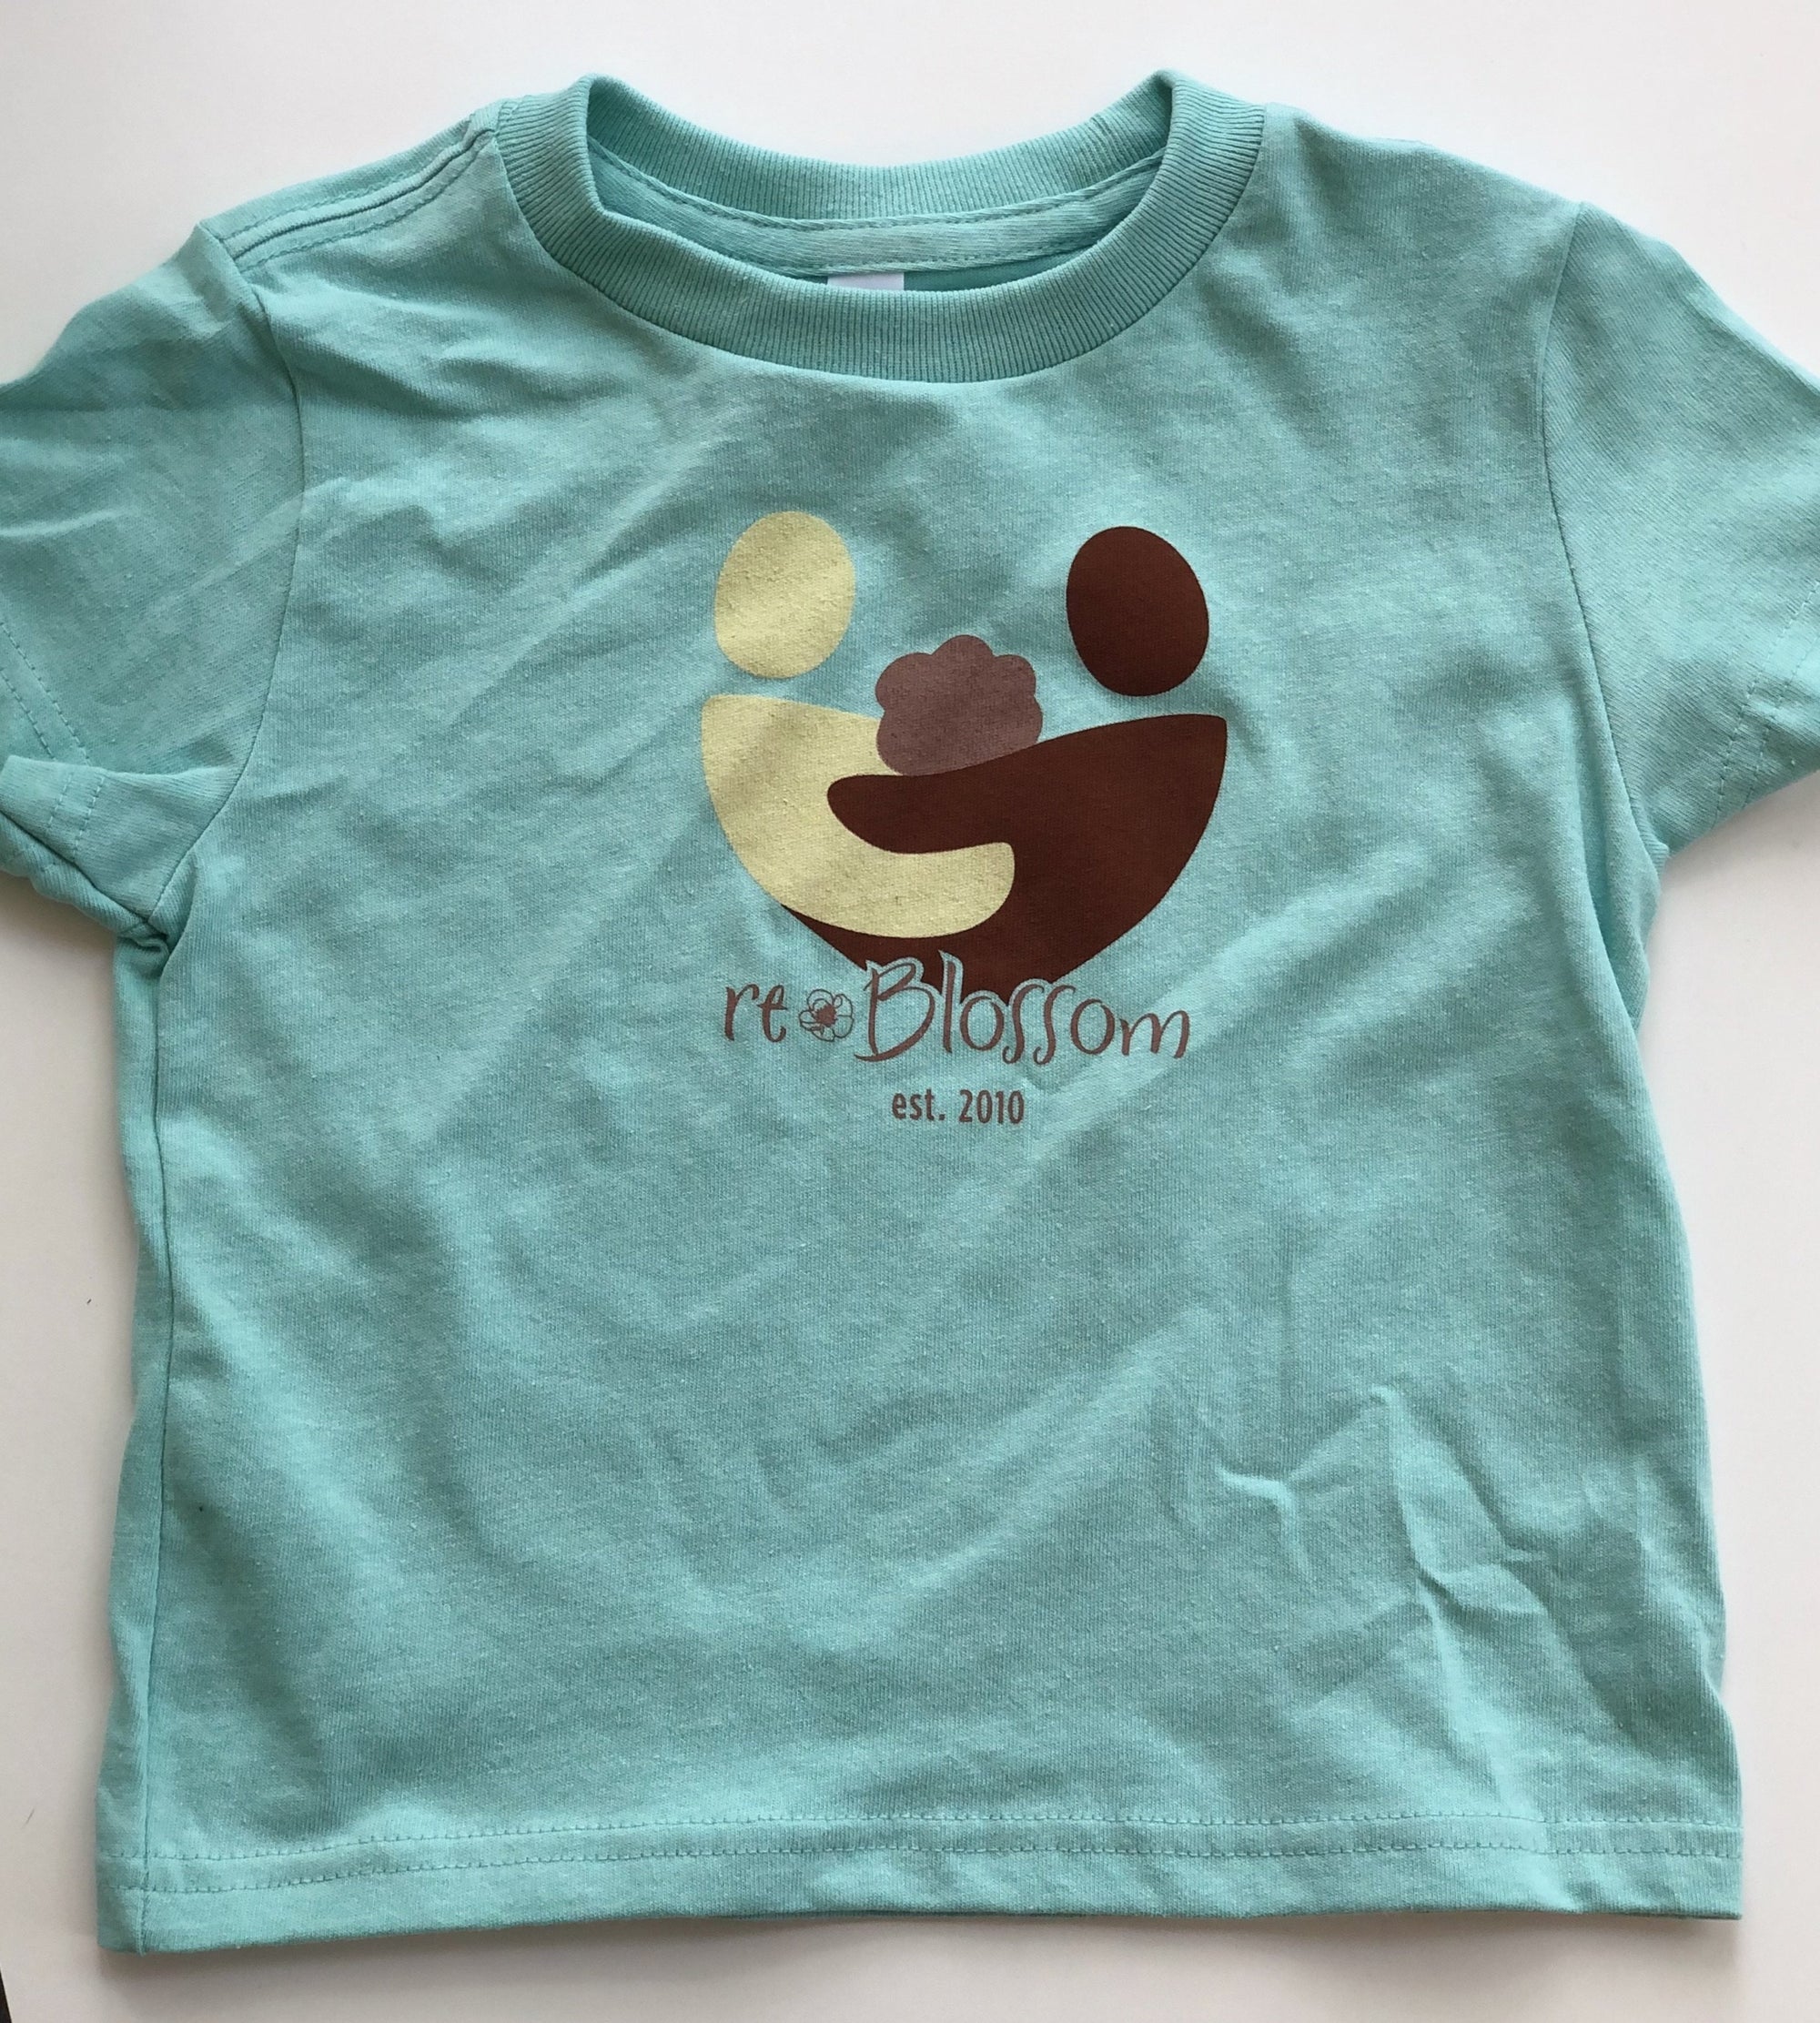 reBlossom Parenting Together Children's T-Shirt